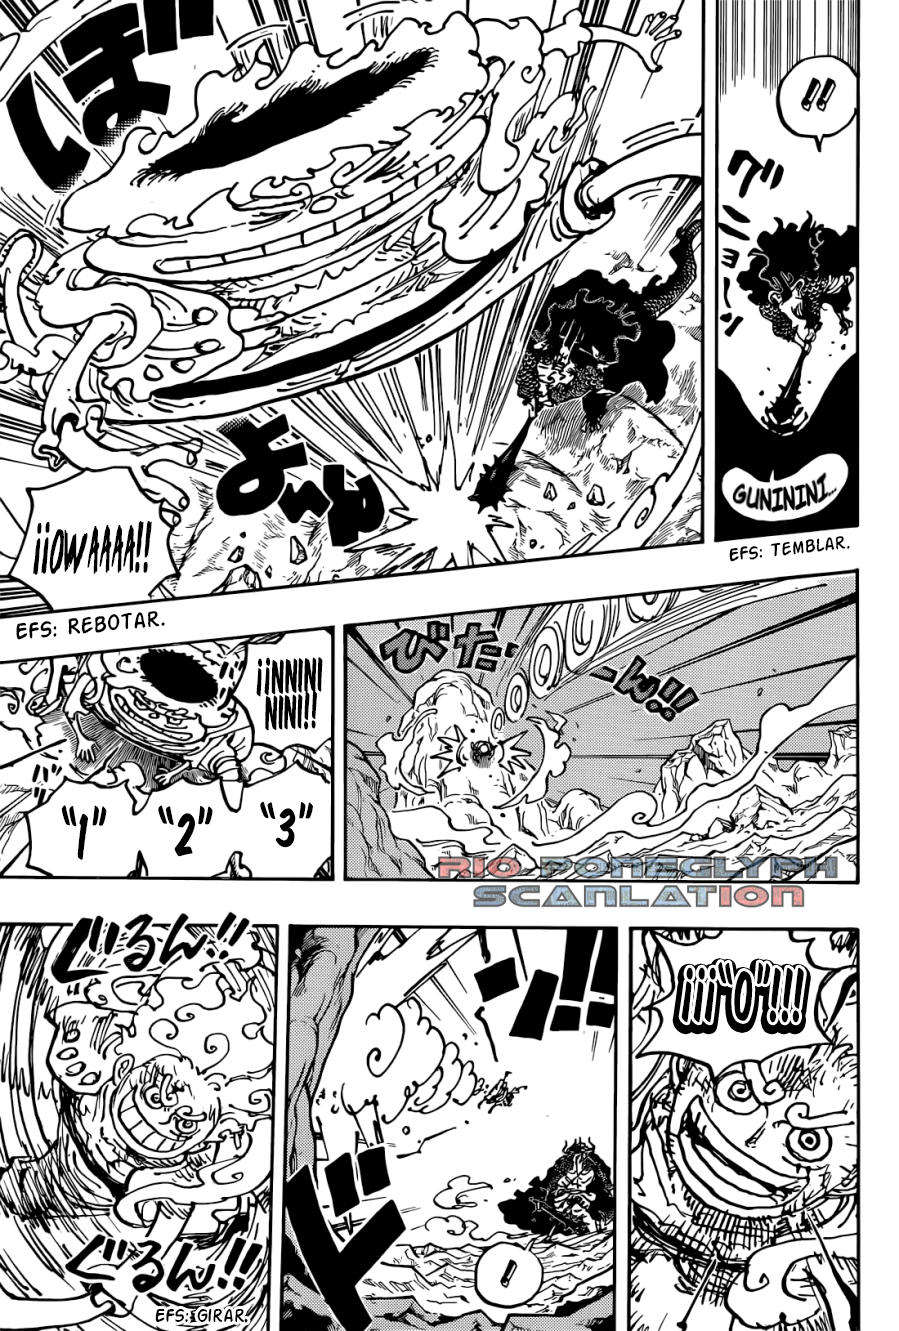 1026 - One Piece Manga 1045 [Español] [Rio Poneglyph Scans] 3ZEYngXx_o